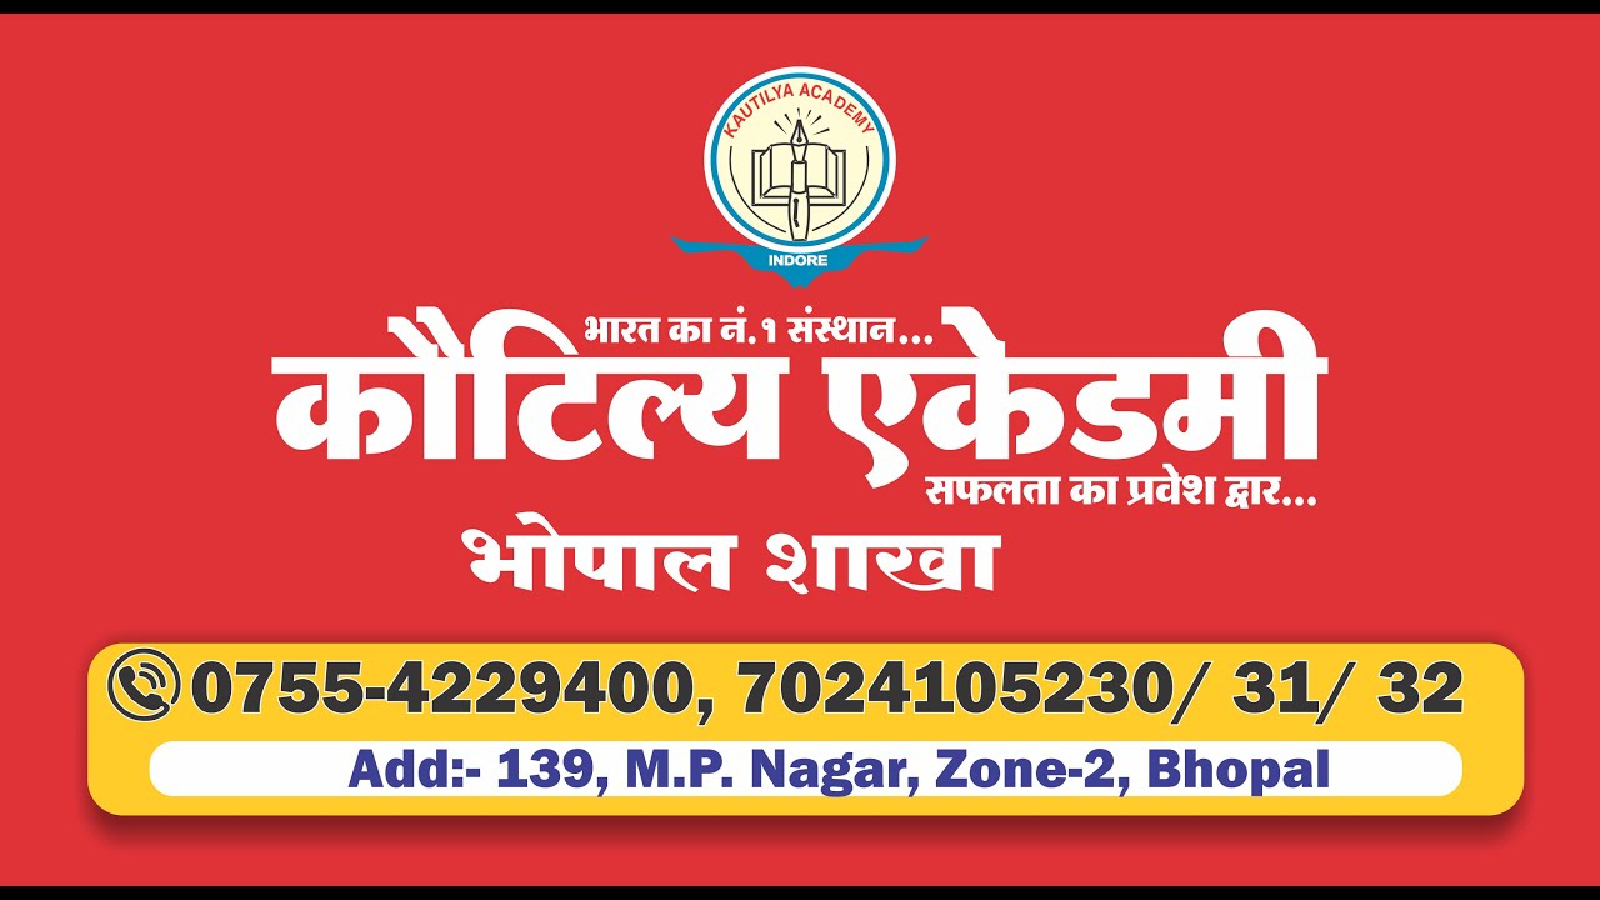 Kautilya  Academy Bhopal Hero Slider - 3